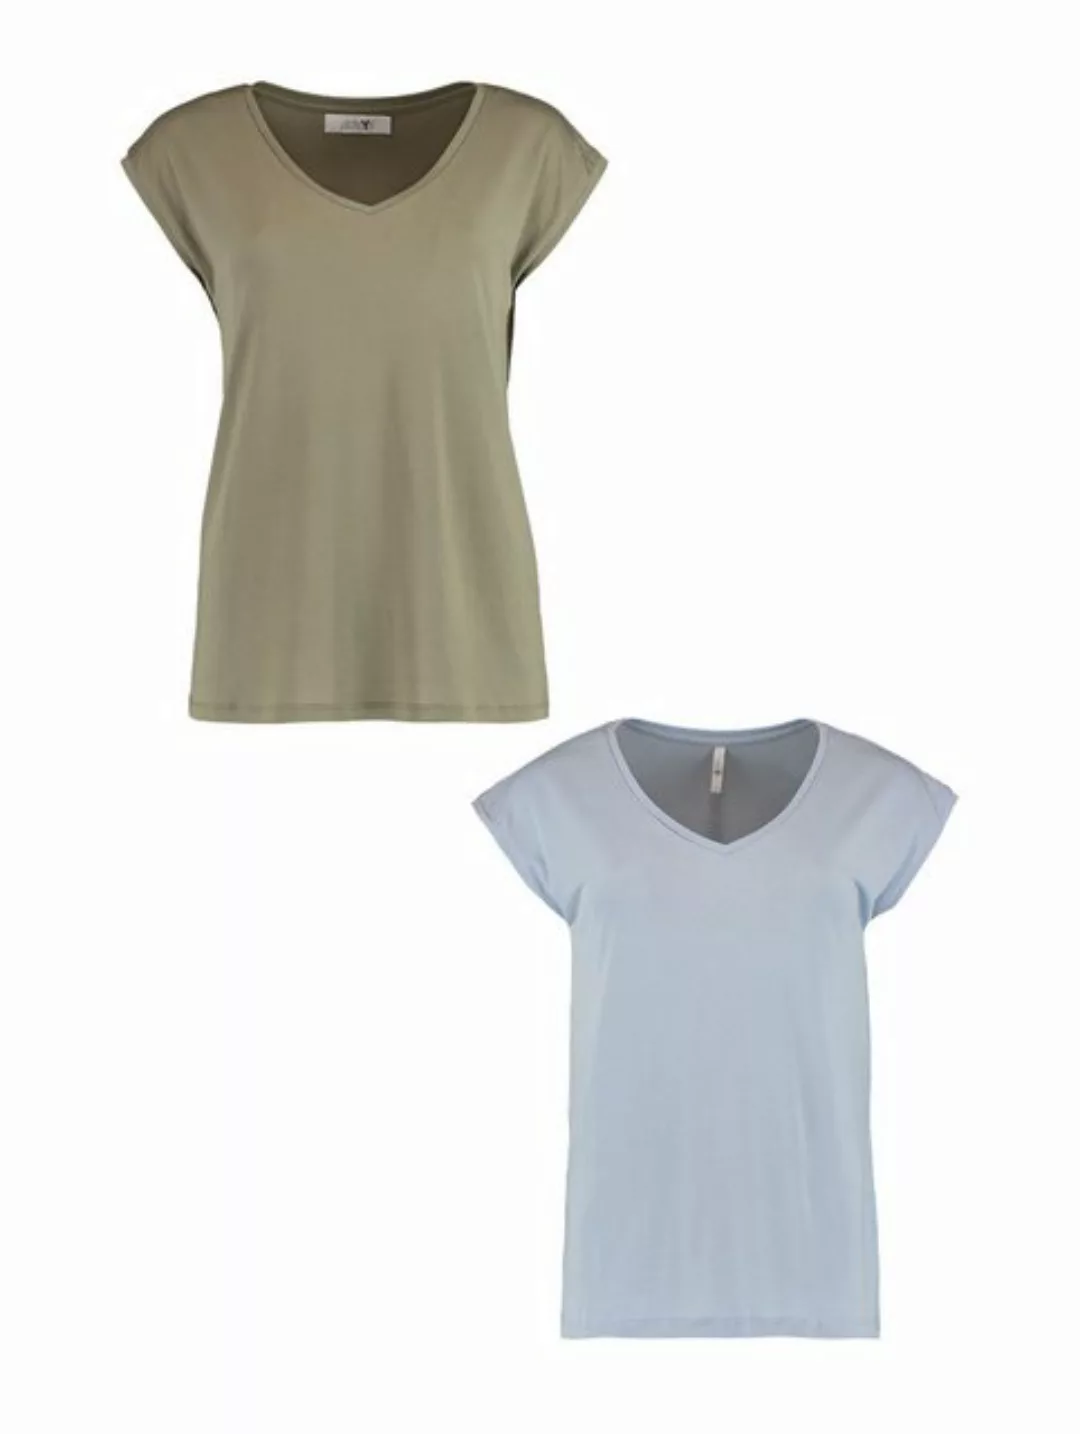 HaILY’S T-Shirt T-Shirt 2er-Set V-Ausschnitt Kurzarm Basic Sommer Shirt (2- günstig online kaufen